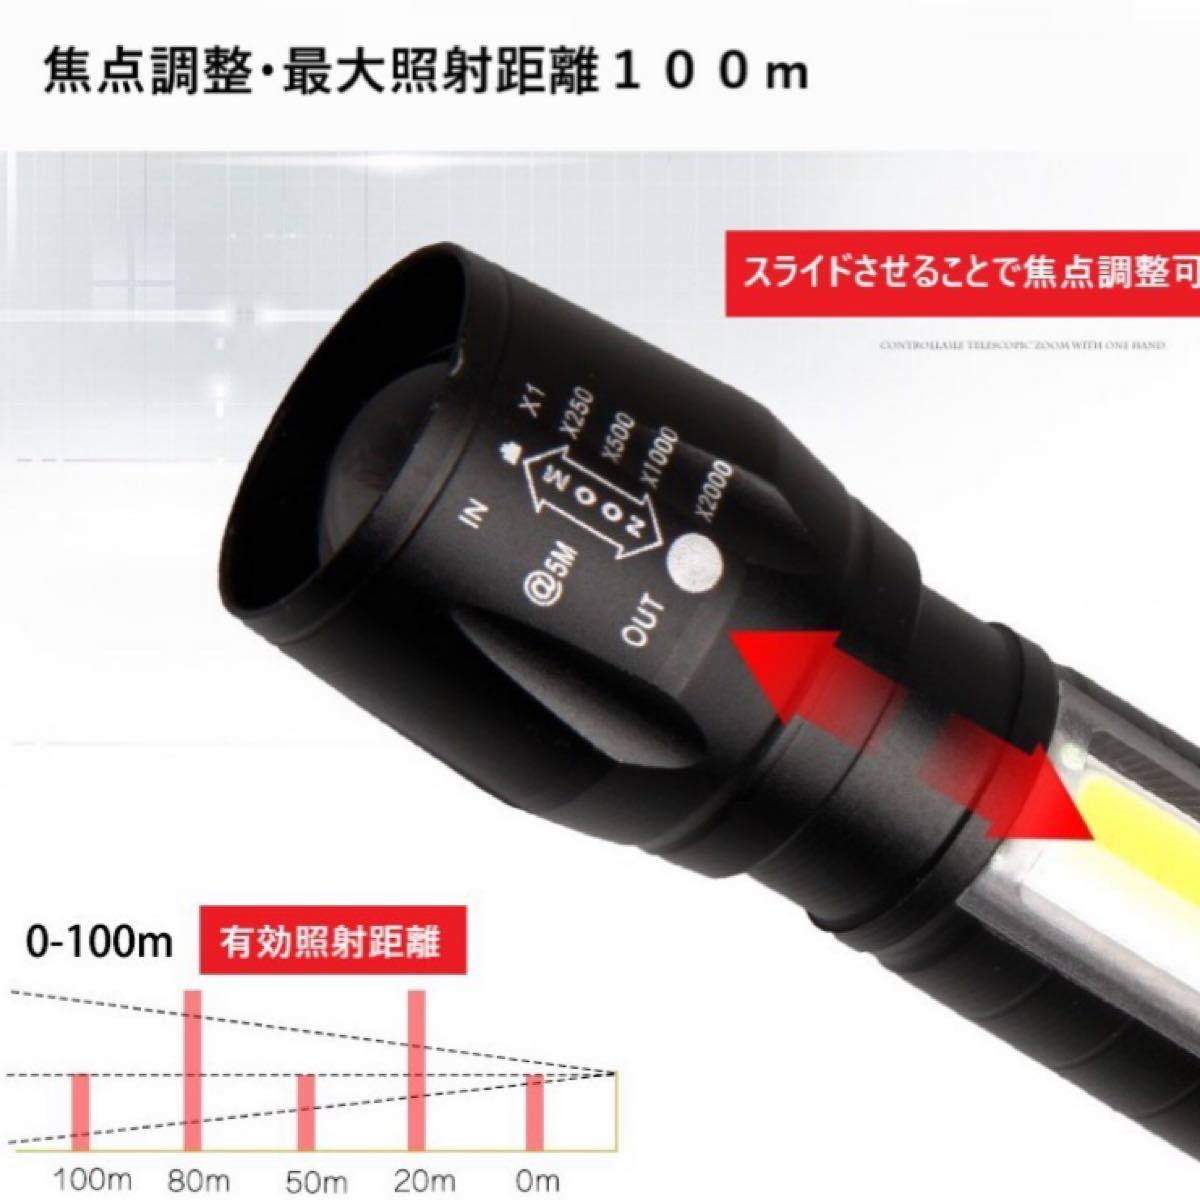 ハンディライト LED 懐中電灯 USB 充電 防水 作業灯 即購入OK！